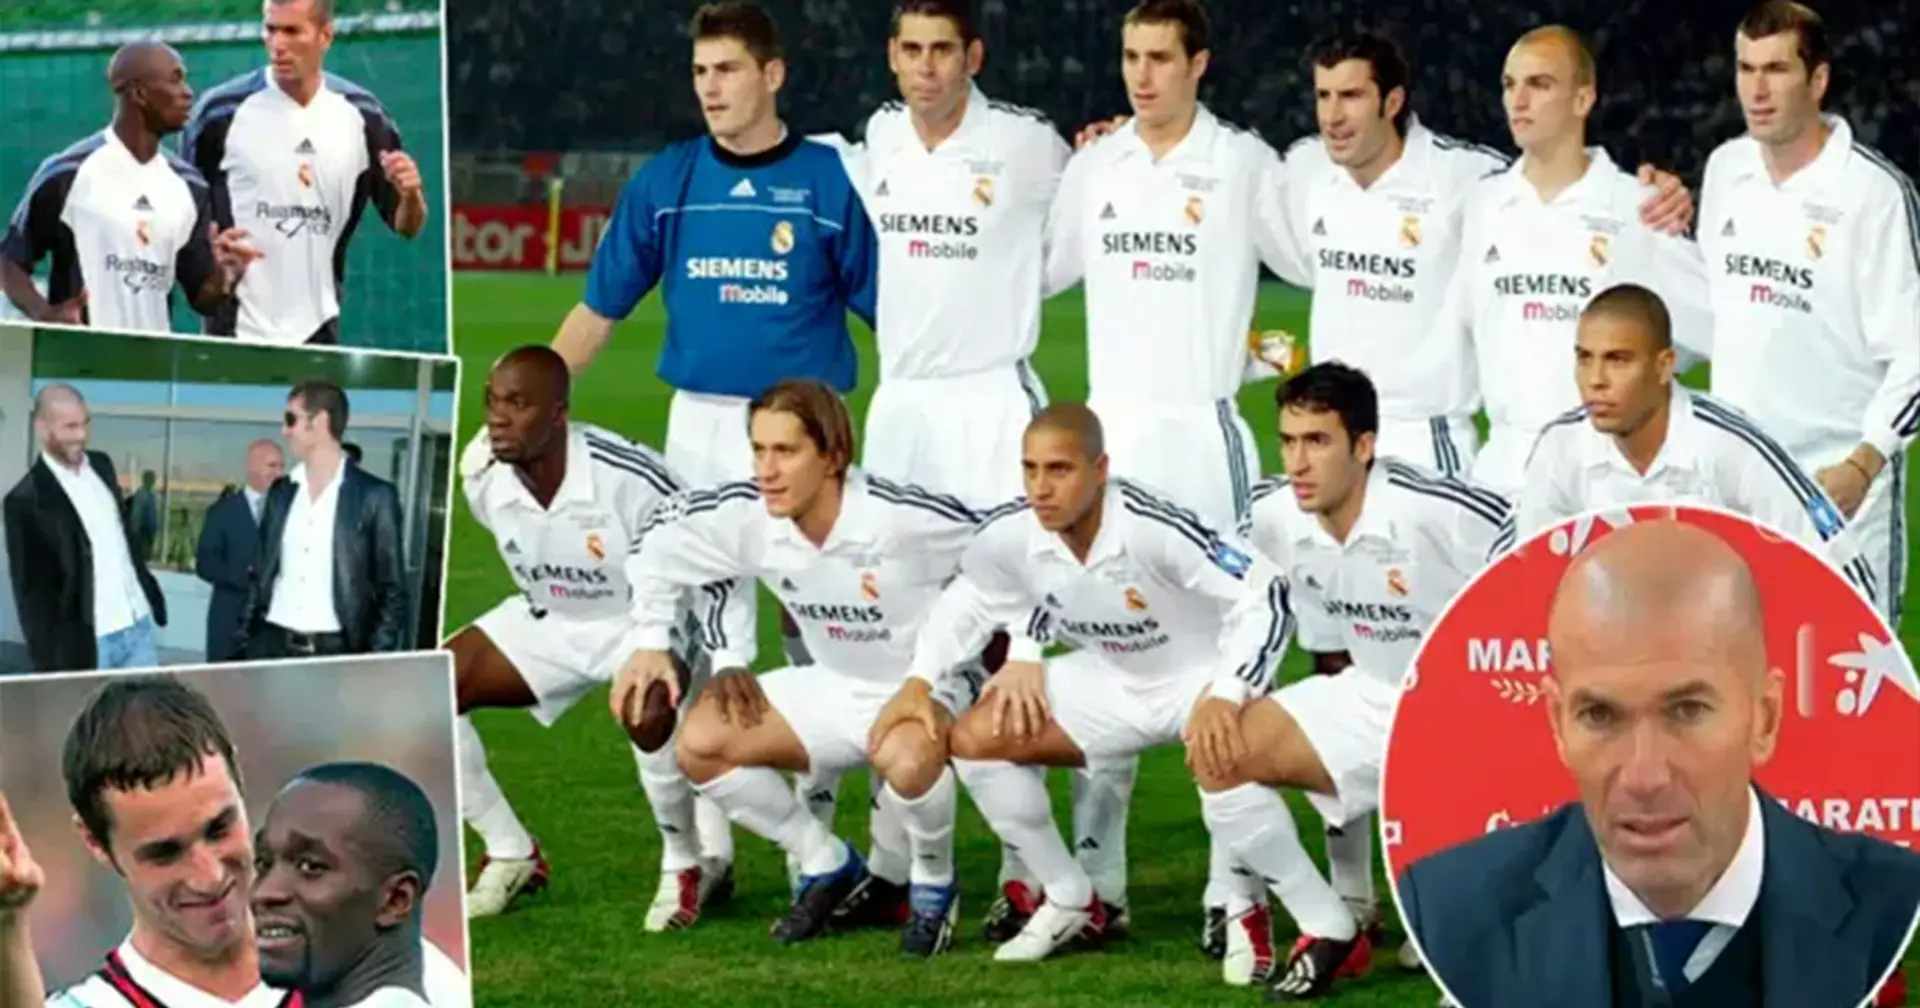 Claude Makelele nombra al mejor jugador con el que ha jugado - sorprendentemente no es Zidane